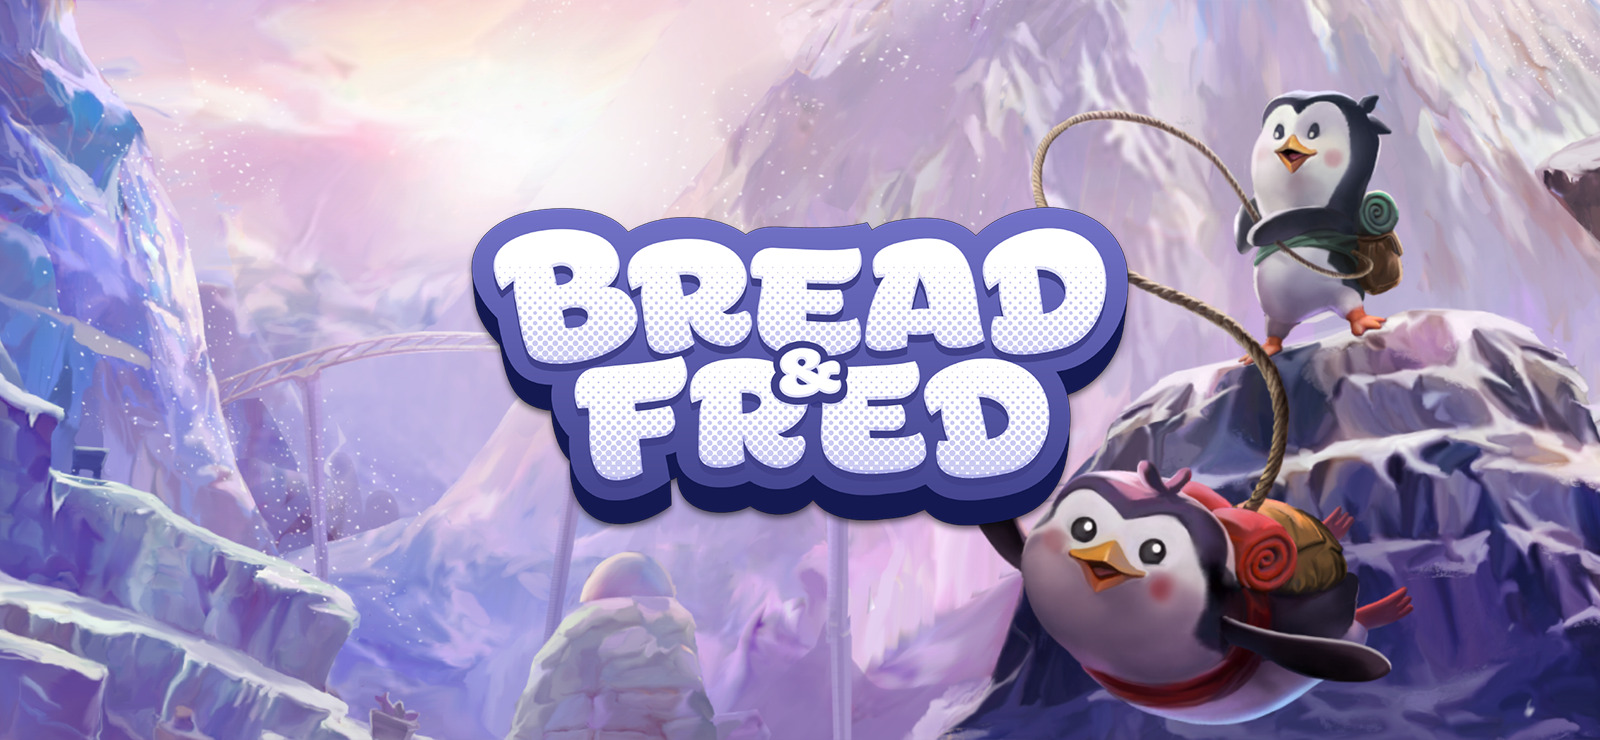 Jogo Bread & Fred - PC GOG